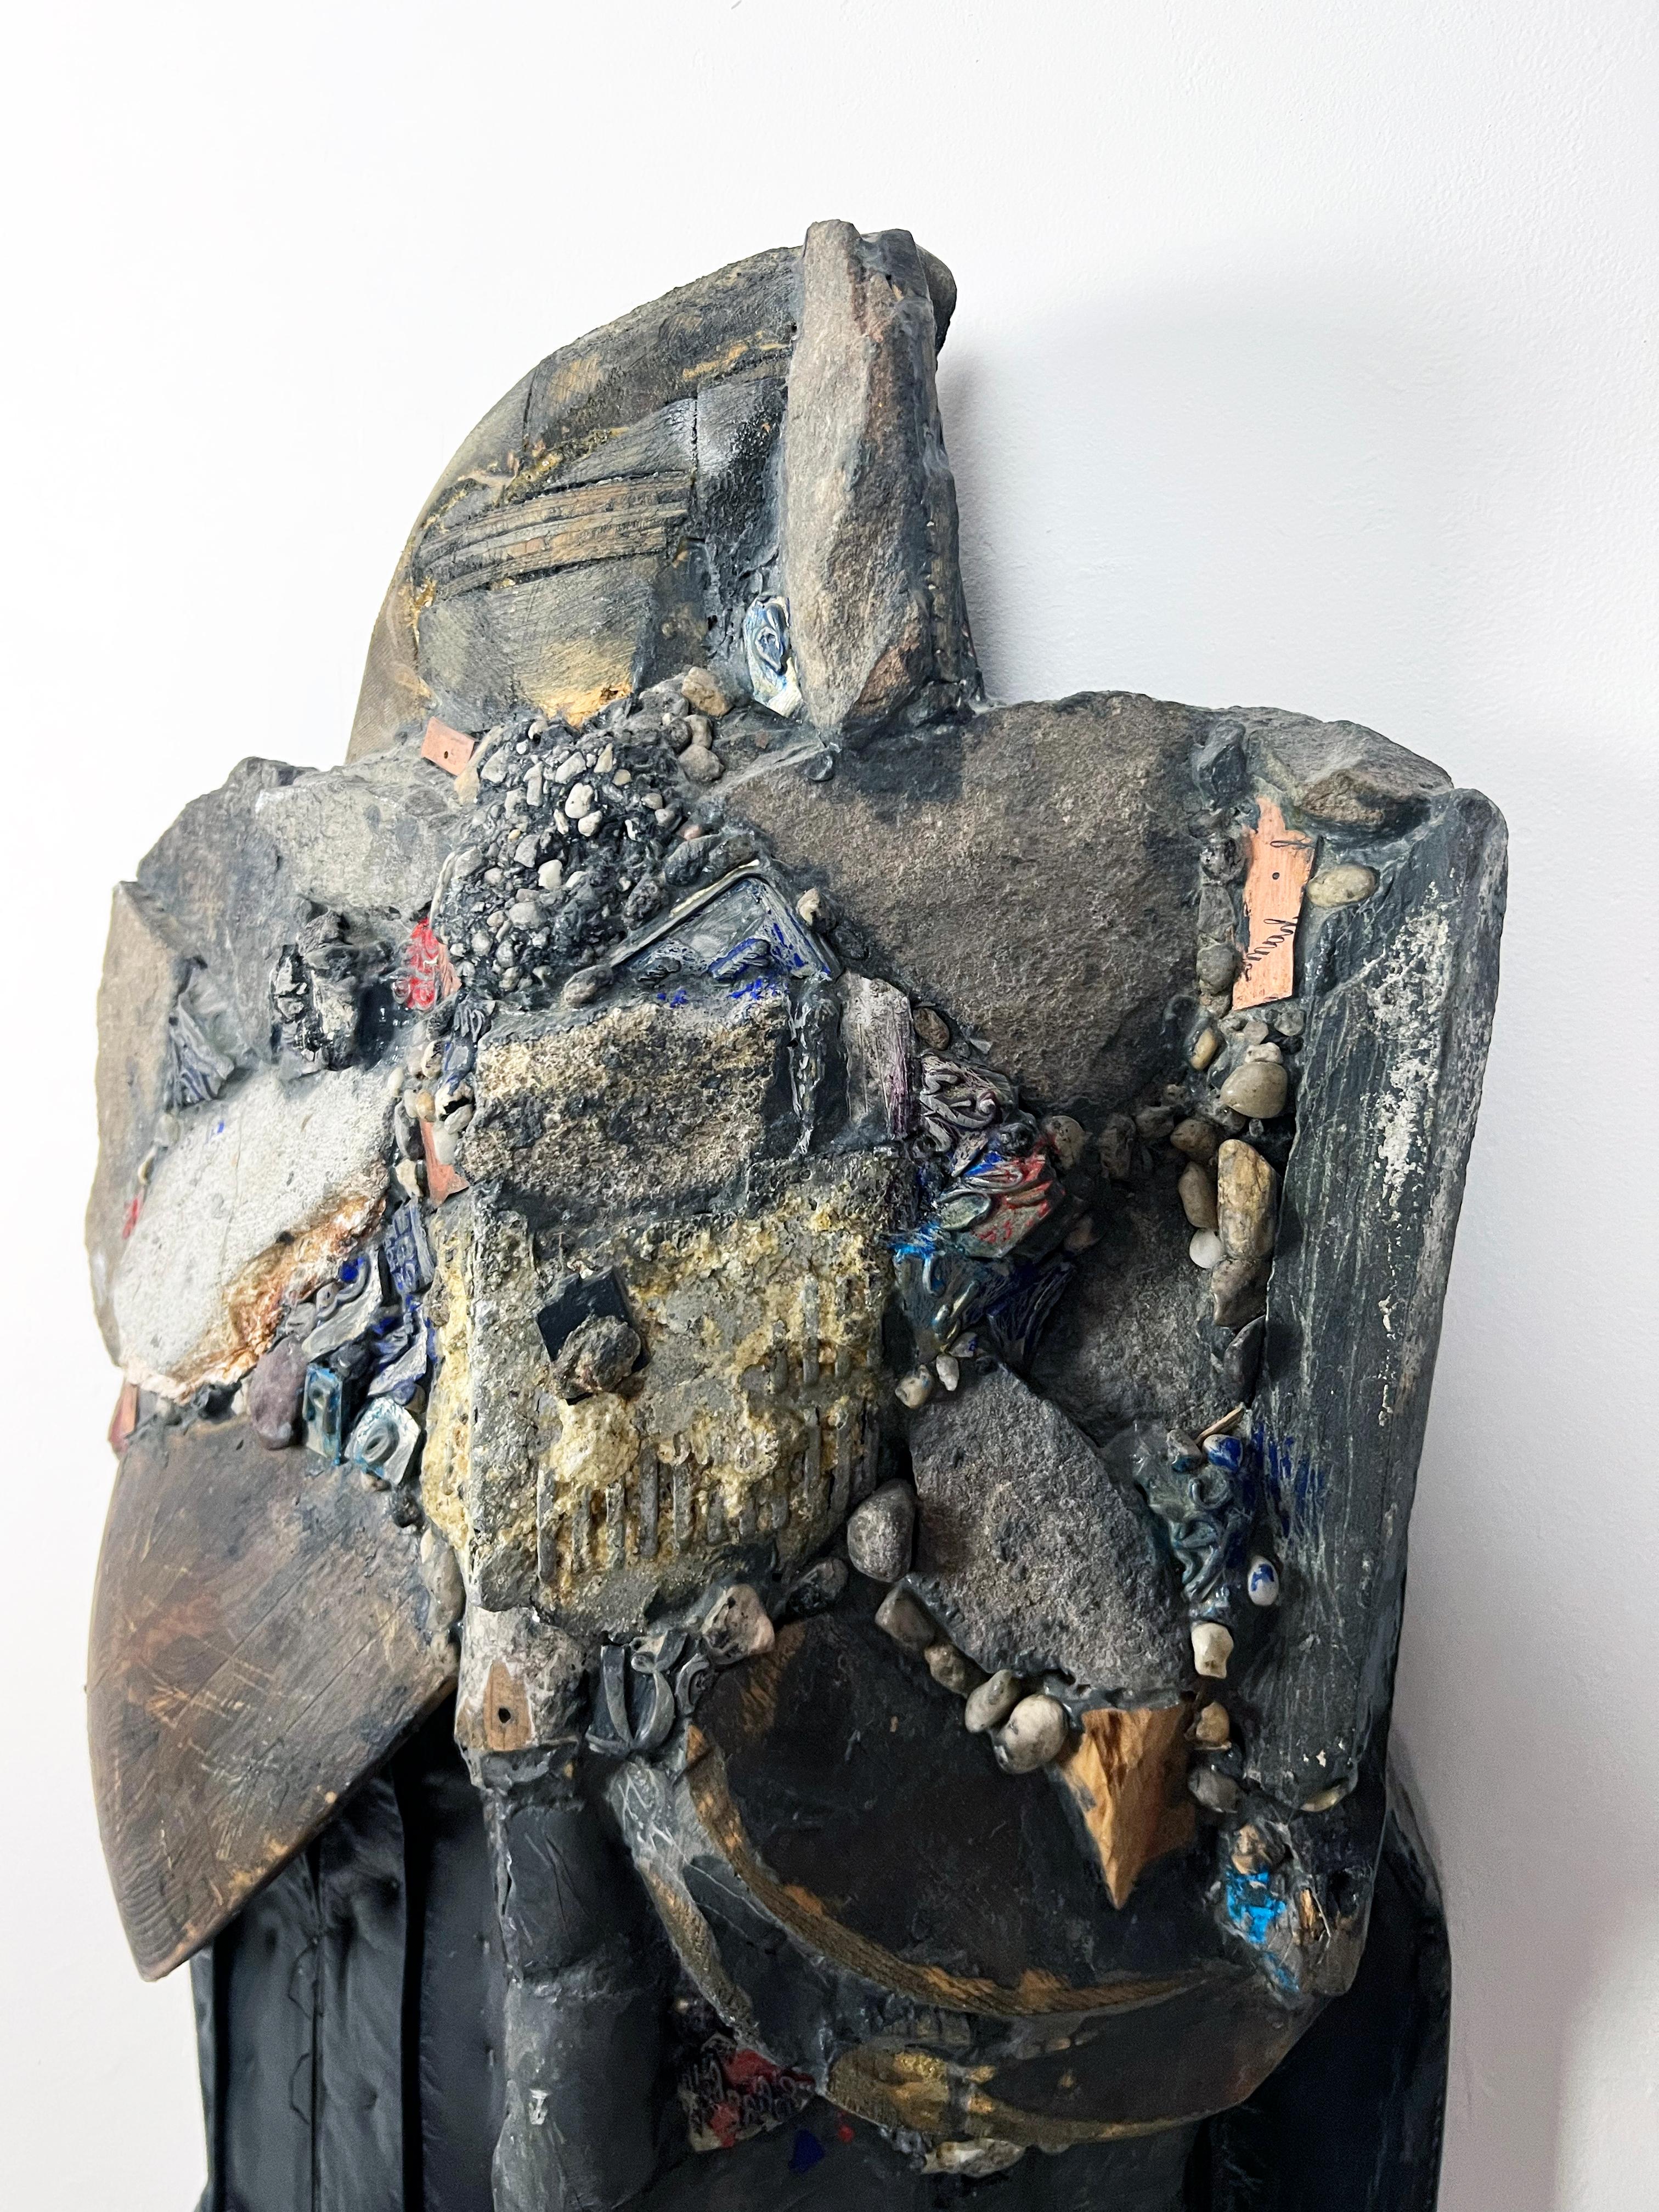 Cette sculpture de la série Knights of Protection de Linda Stein fonctionne à la fois comme un défenseur au combat et comme un symbole de pacifisme.  La série fait référence à des icônes populaires et religieuses telles que Wonder Woman, Princesse